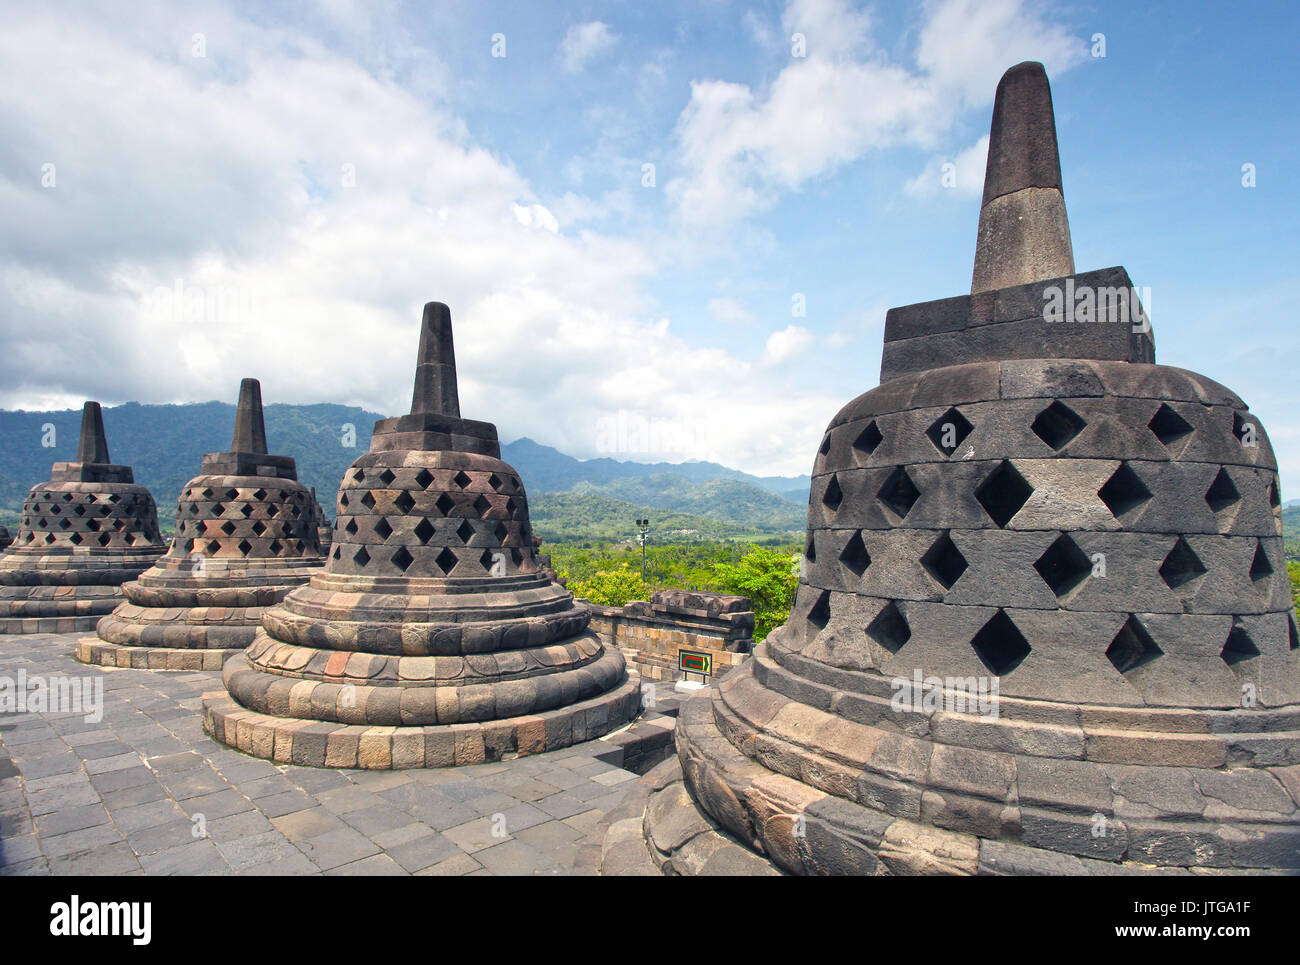 Borobudur Temple in Indonesia Stock Photo